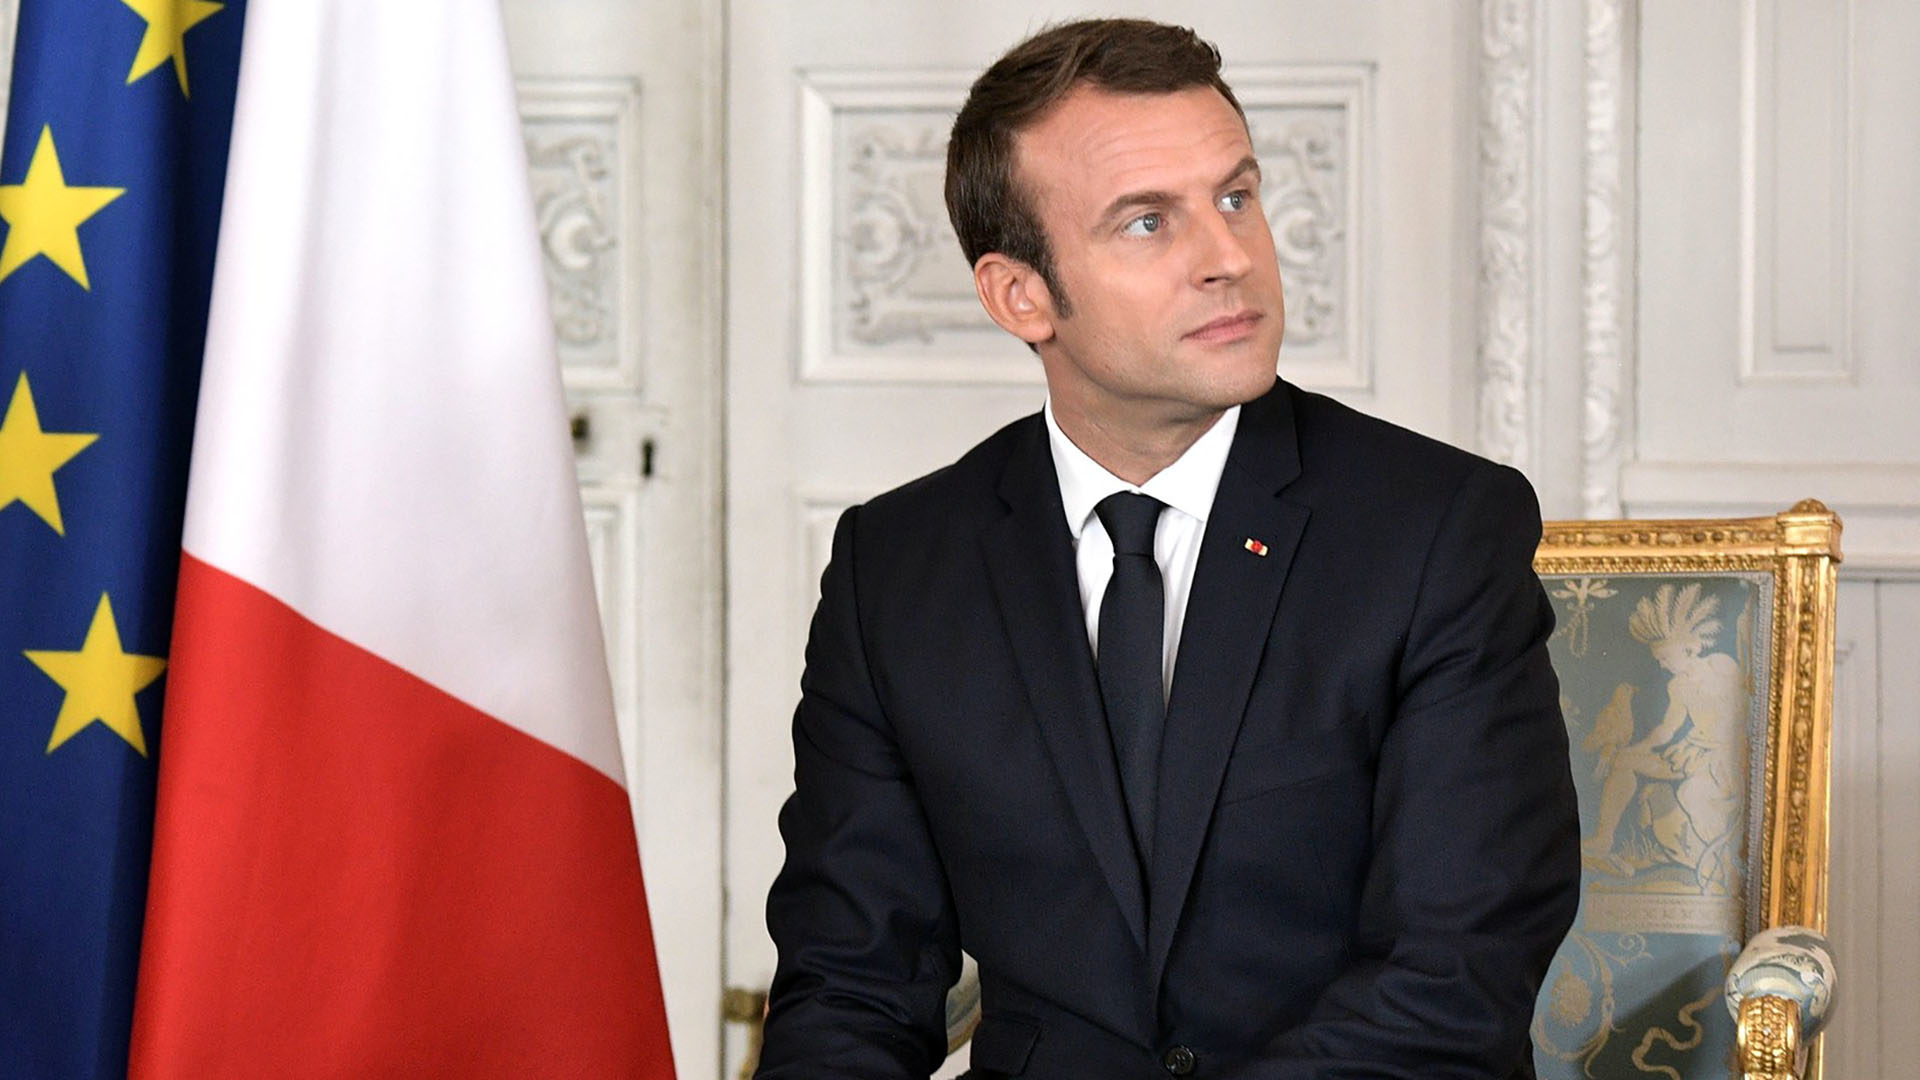 Le président français Emmanuel Macron (Photo: Wikimedia Common/CC BY 4.0)